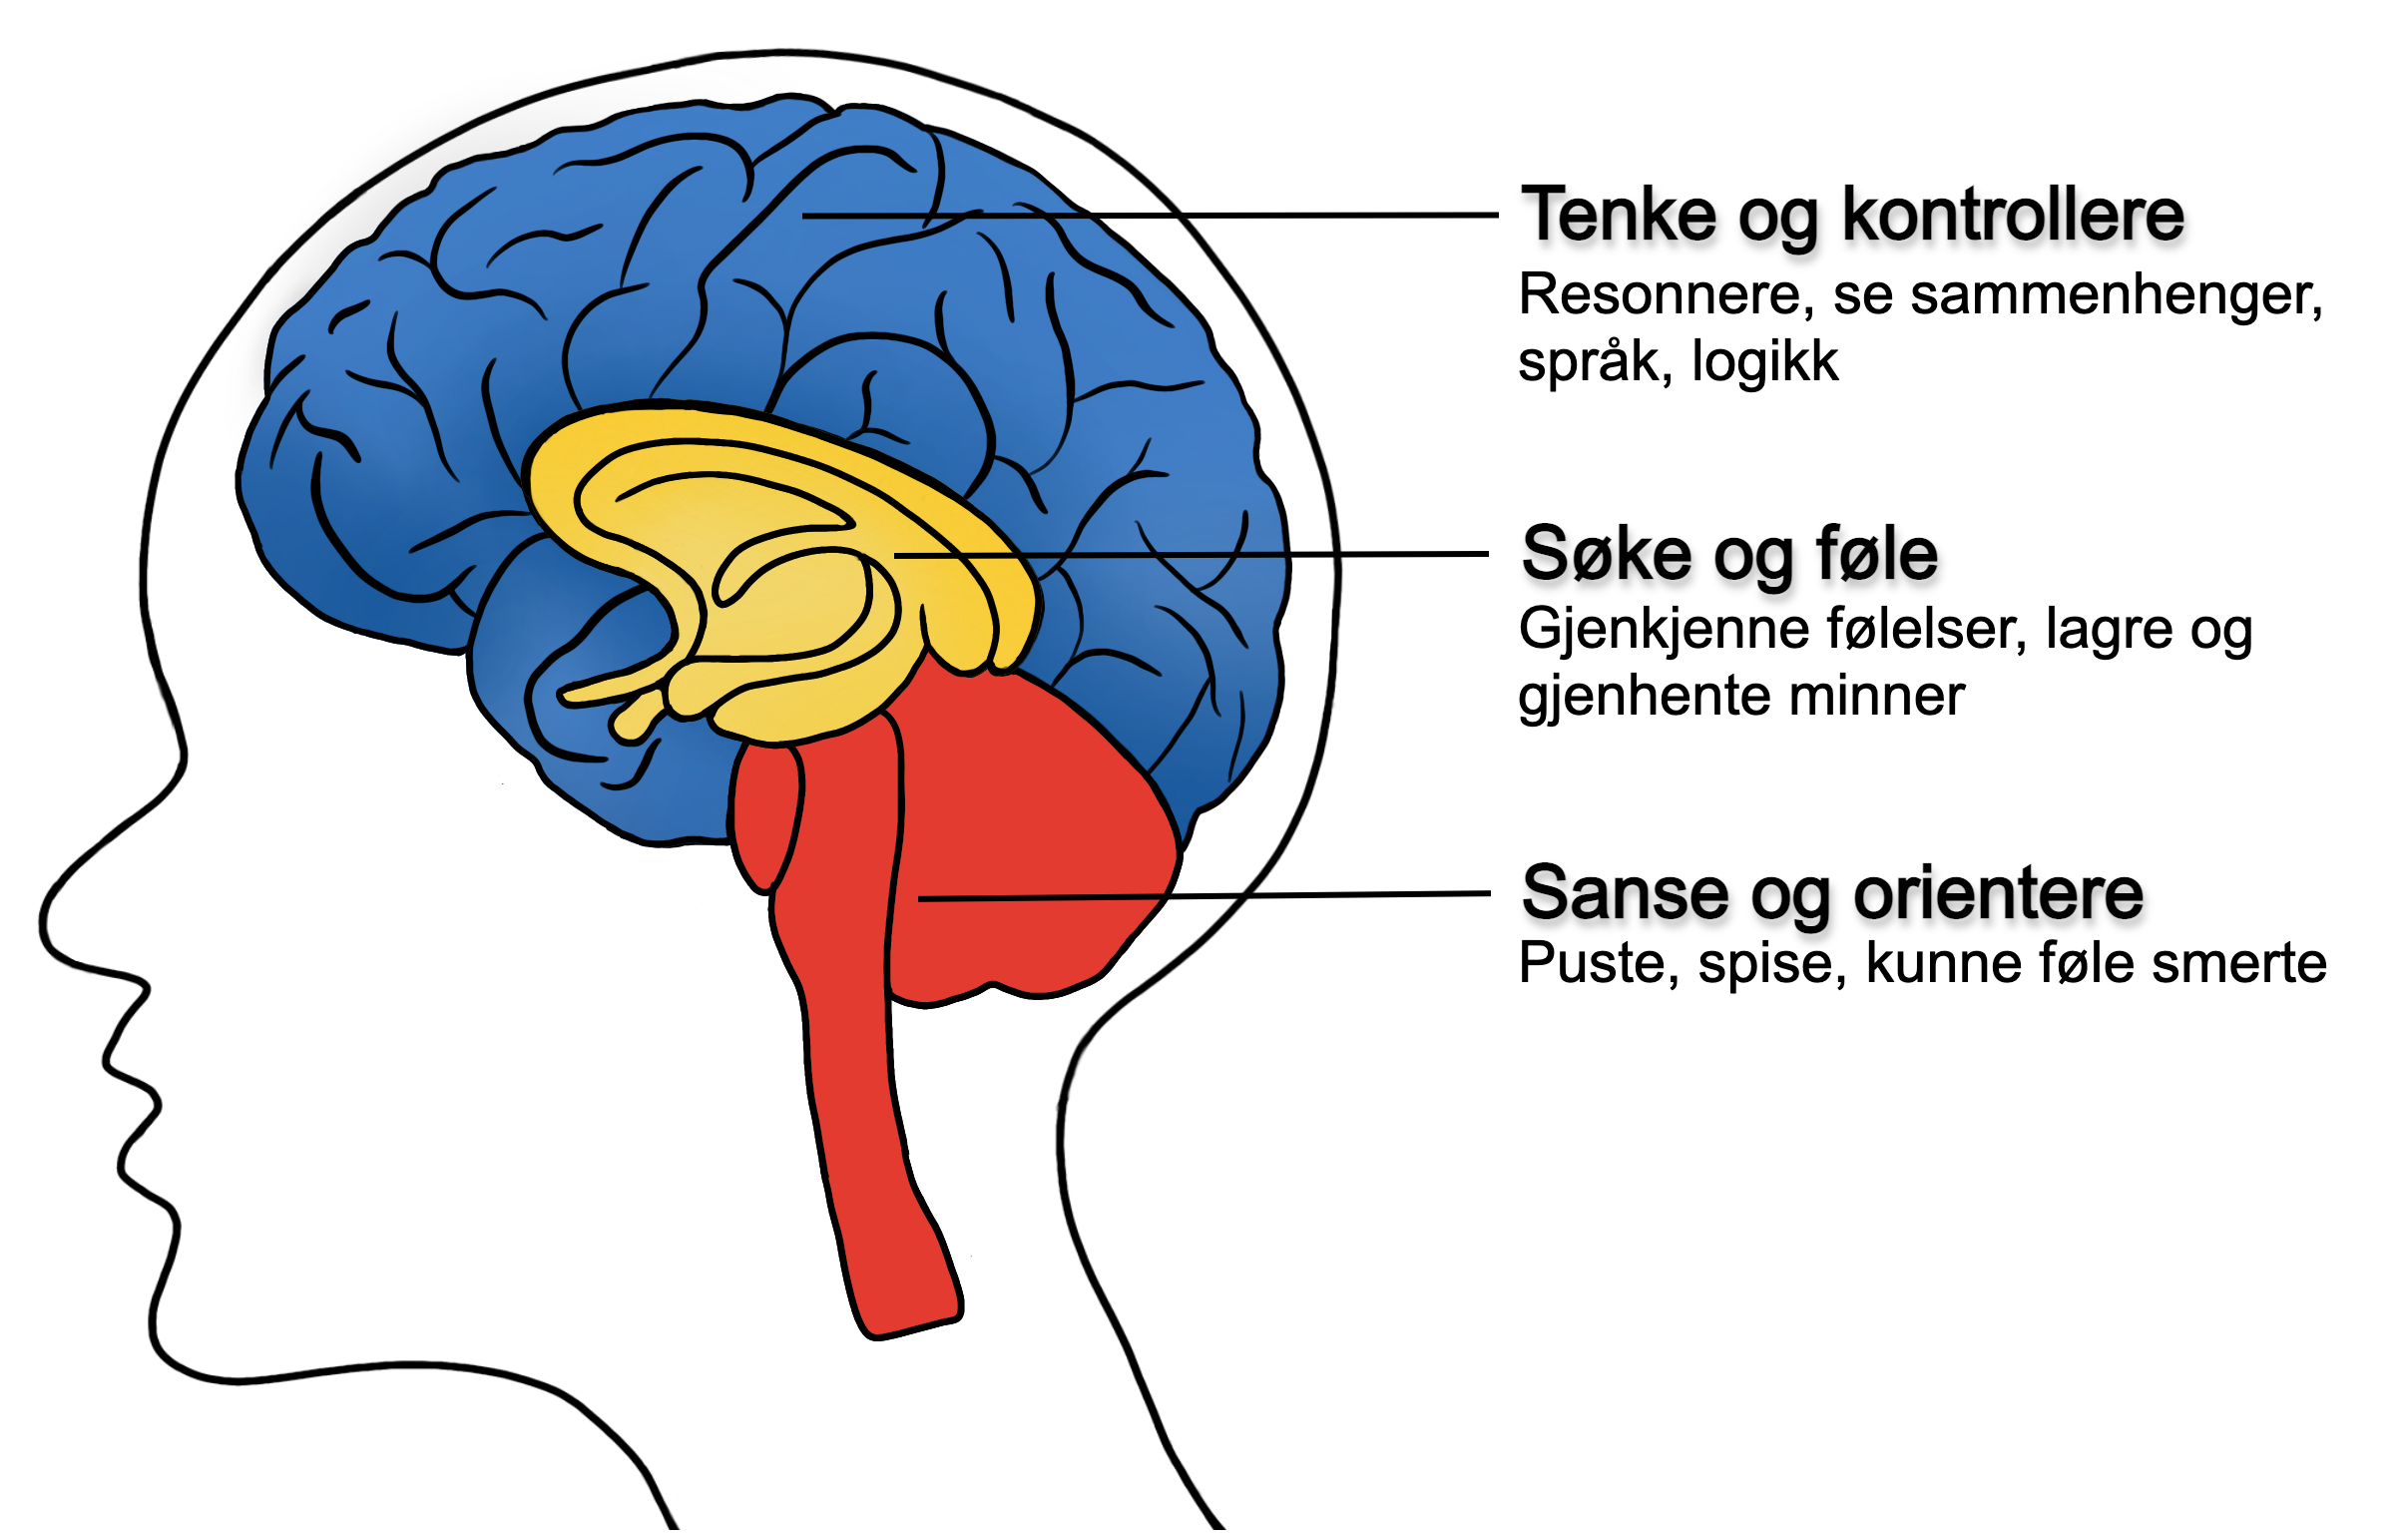 Modell av den tredelte hjernen. Fra øverste del: "tenke og kontrollere", "søke og føle" og "sanse og orientere"